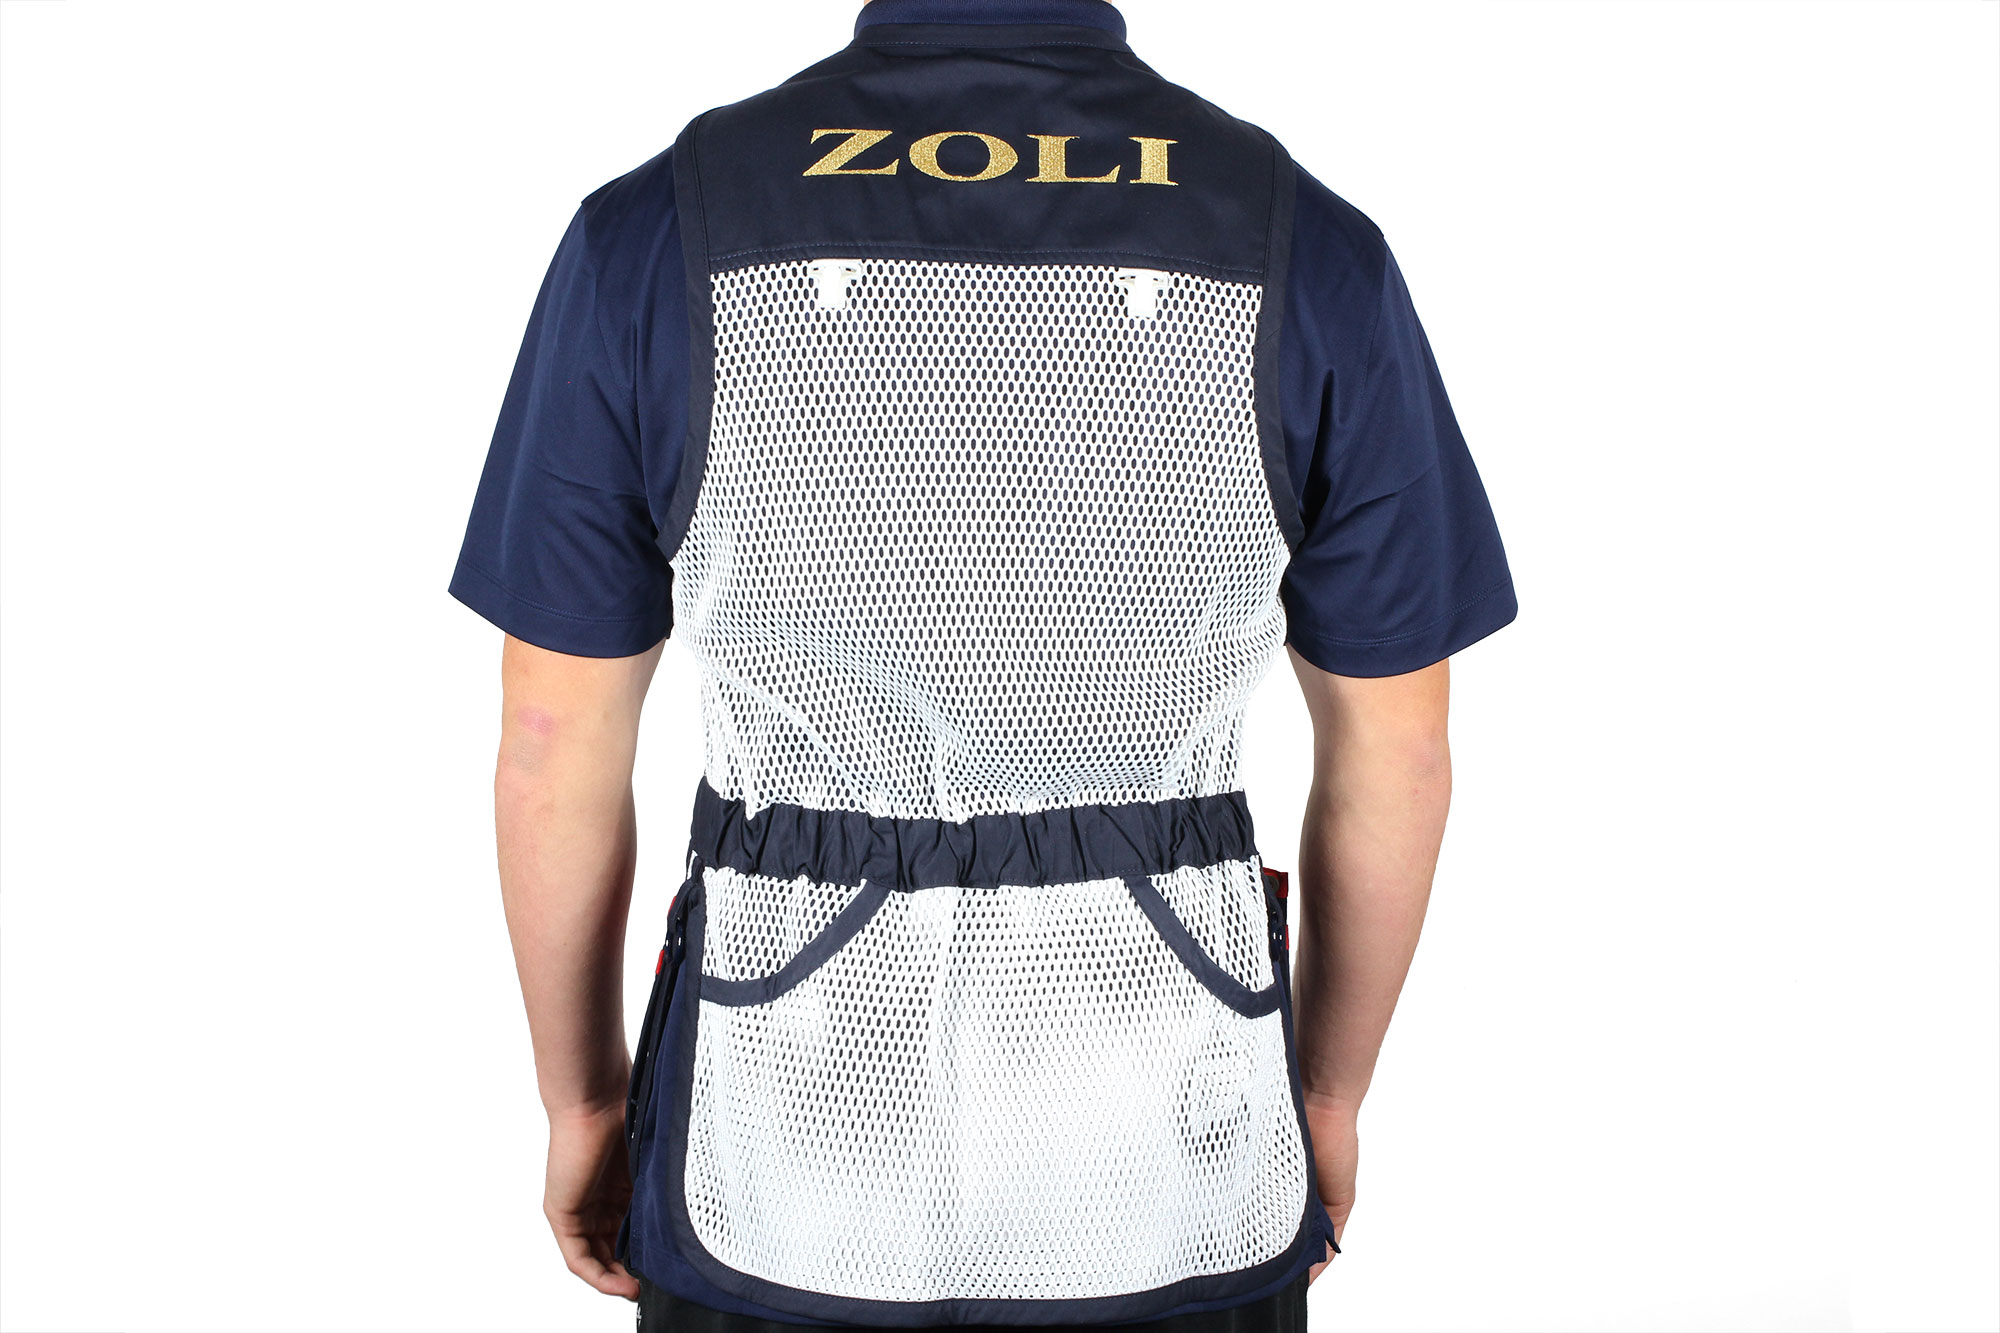 Zoli Shooter Vest by Castellani back